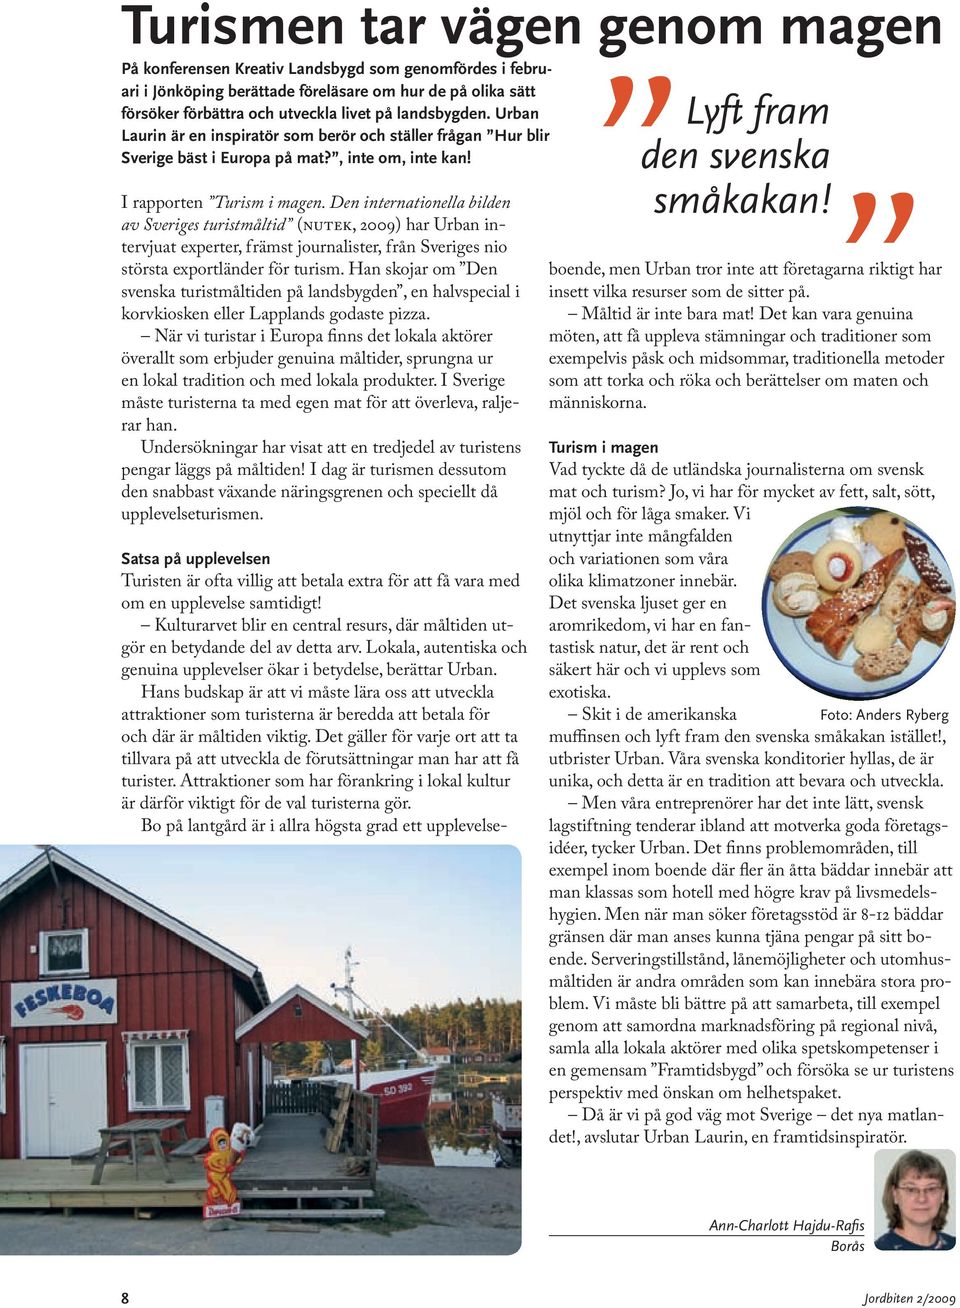 Den internationella bilden av Sveriges turistmåltid (nutek, 2009) har Urban intervjuat experter, främst journalister, från Sveriges nio största exportländer för turism.